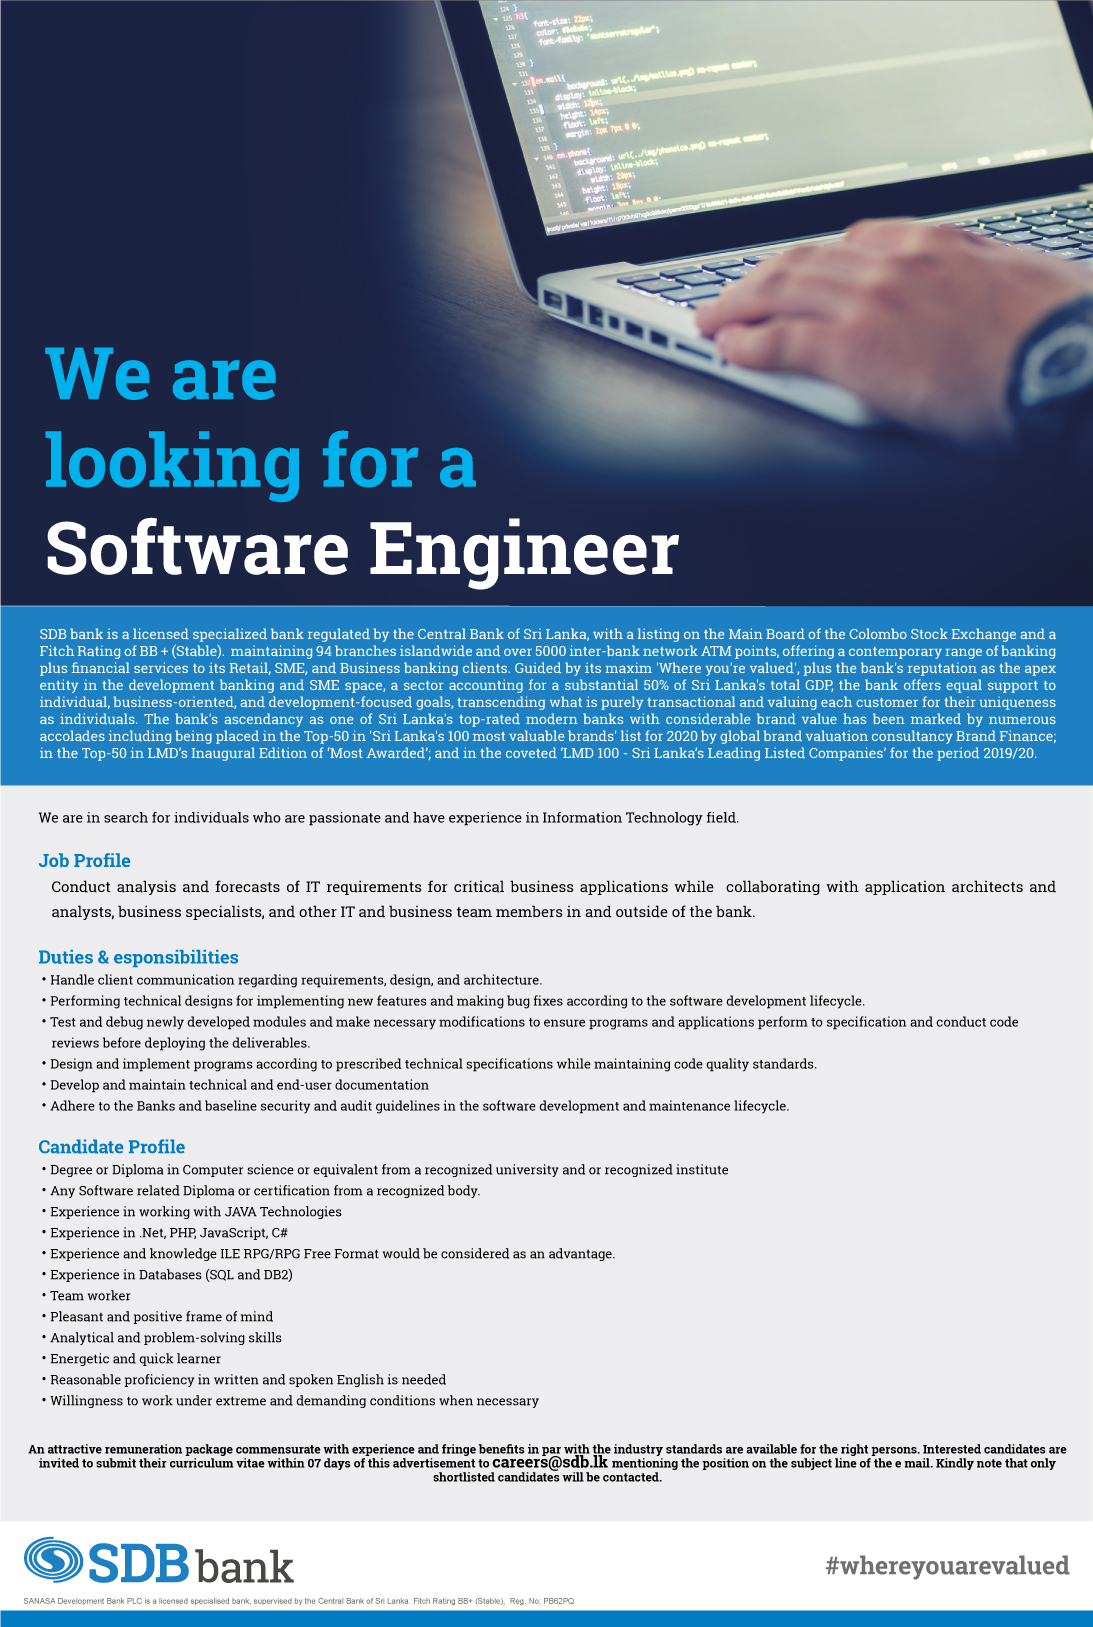 Software Engineer Vacancy in Sanasa Development Bank